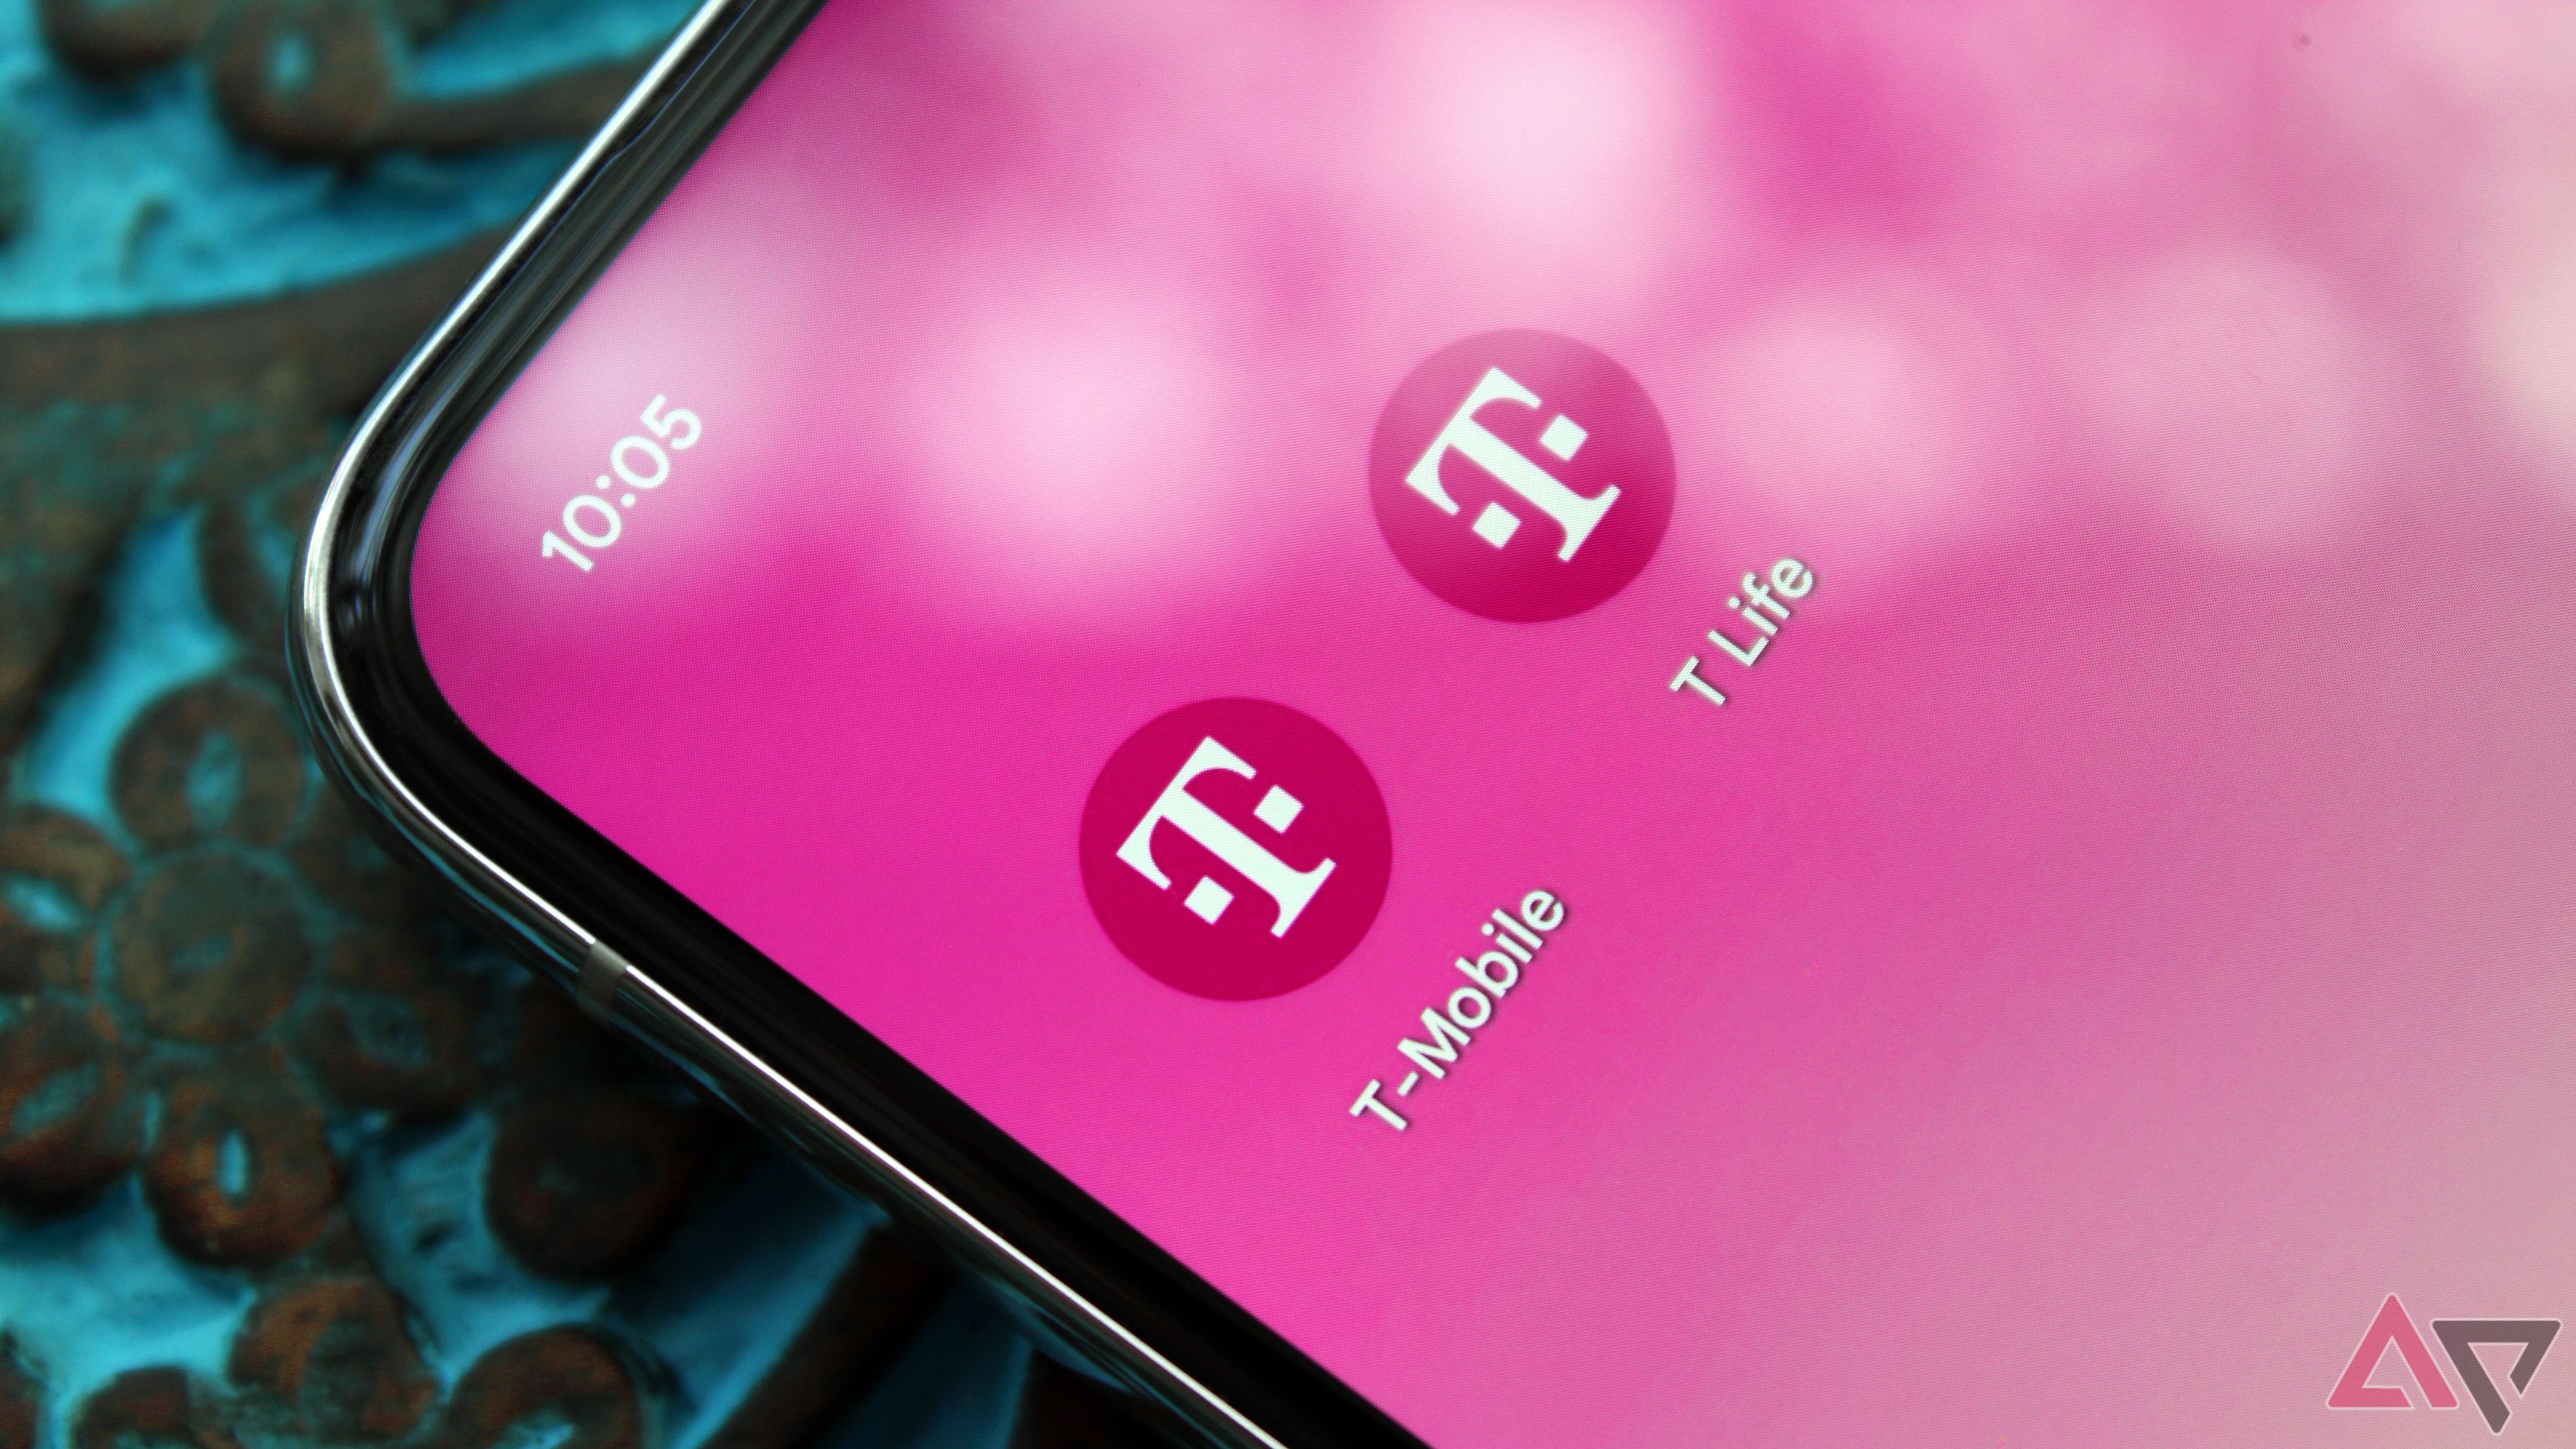 Foto de um telefone com o aplicativo T-Mobile e o aplicativo T Life na tela inicial.